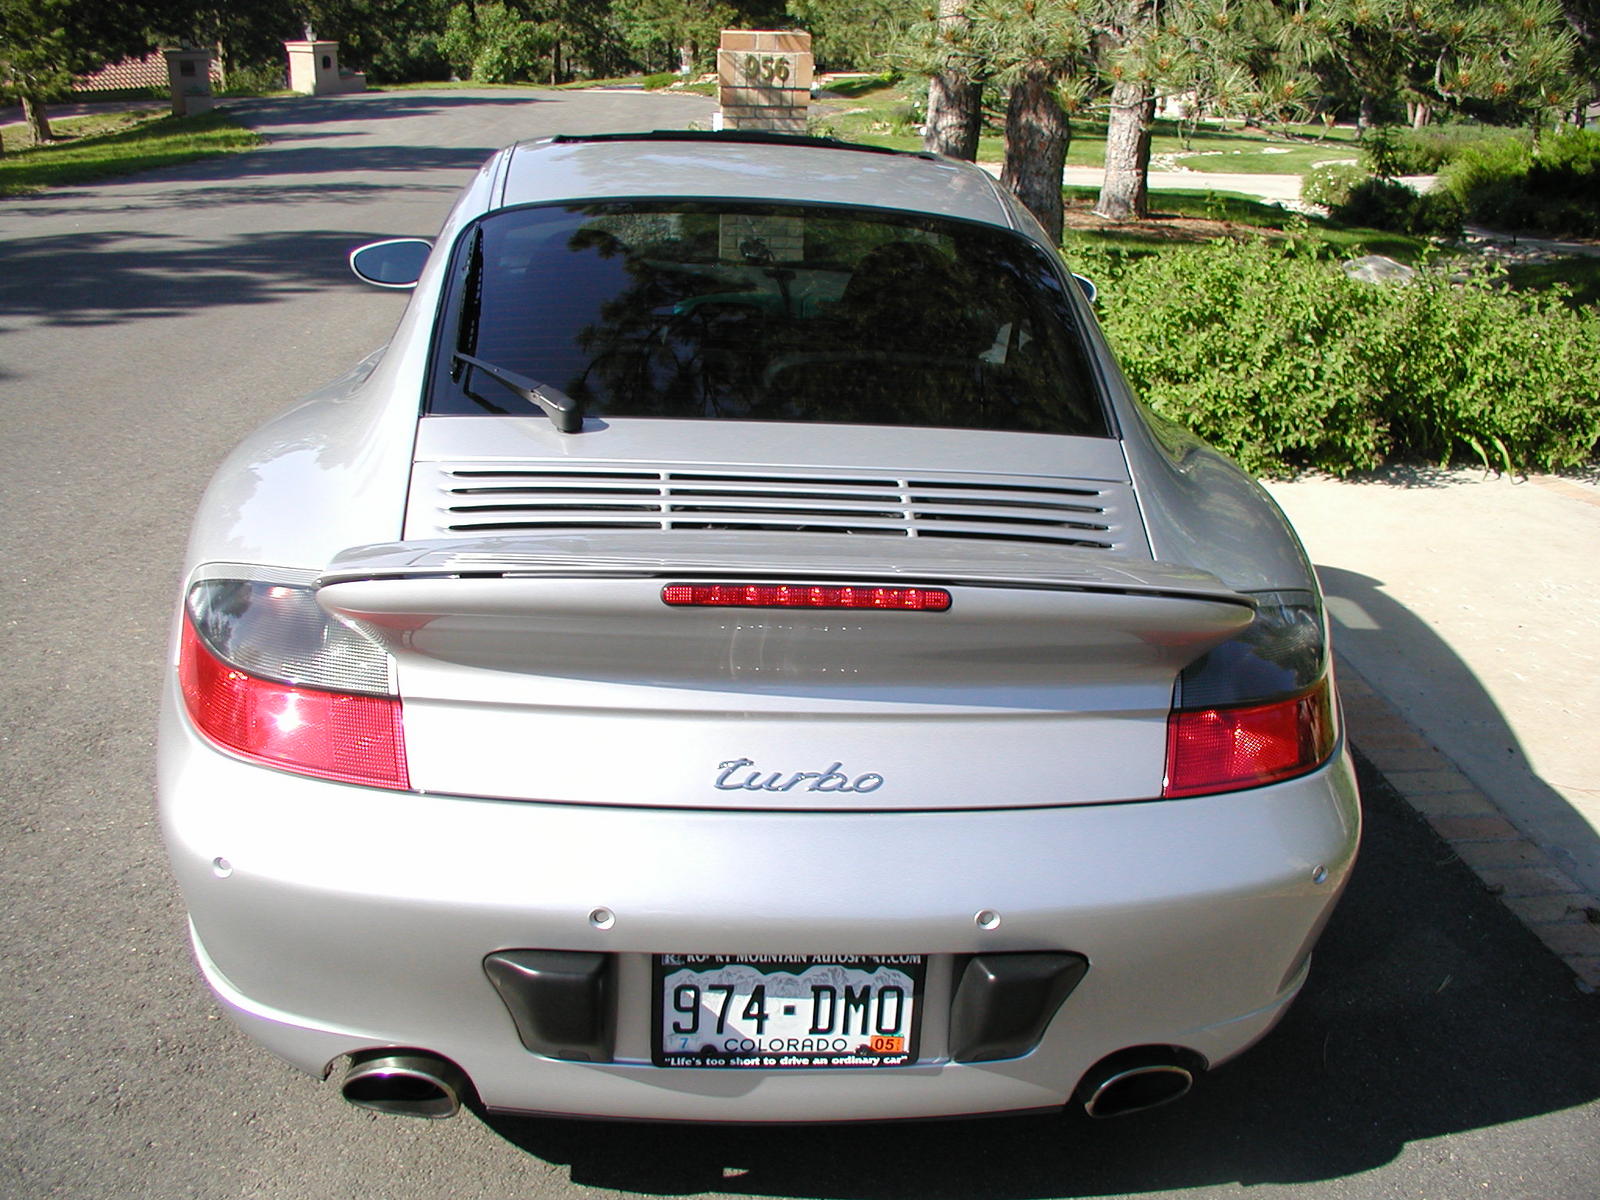 2001 Porsche 911 turbo 27k miles - Rennlist - Porsche Discussion Forums